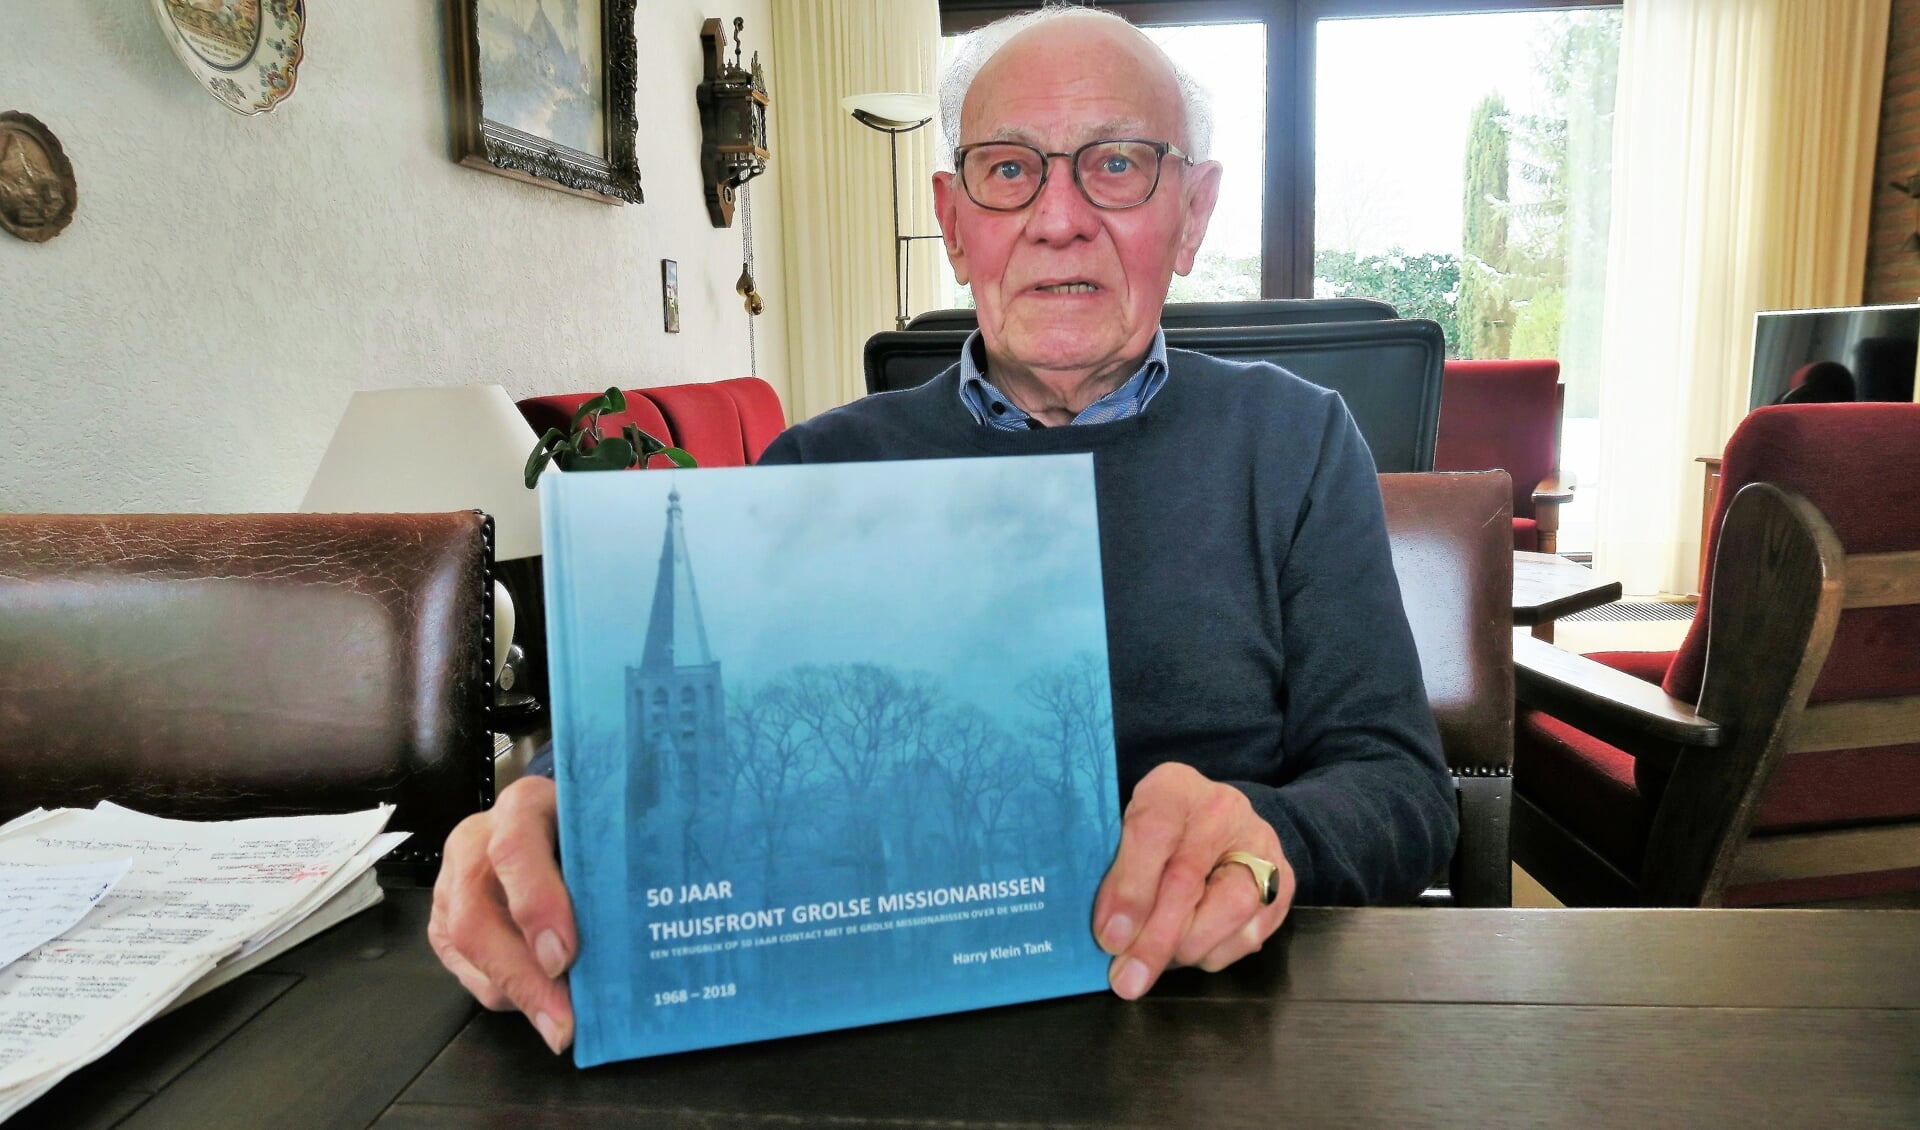 Harry Klein Tank toont het boek ’50 jaar Thuisfront Grolse missionarissen’. Foto: Theo Huijskes